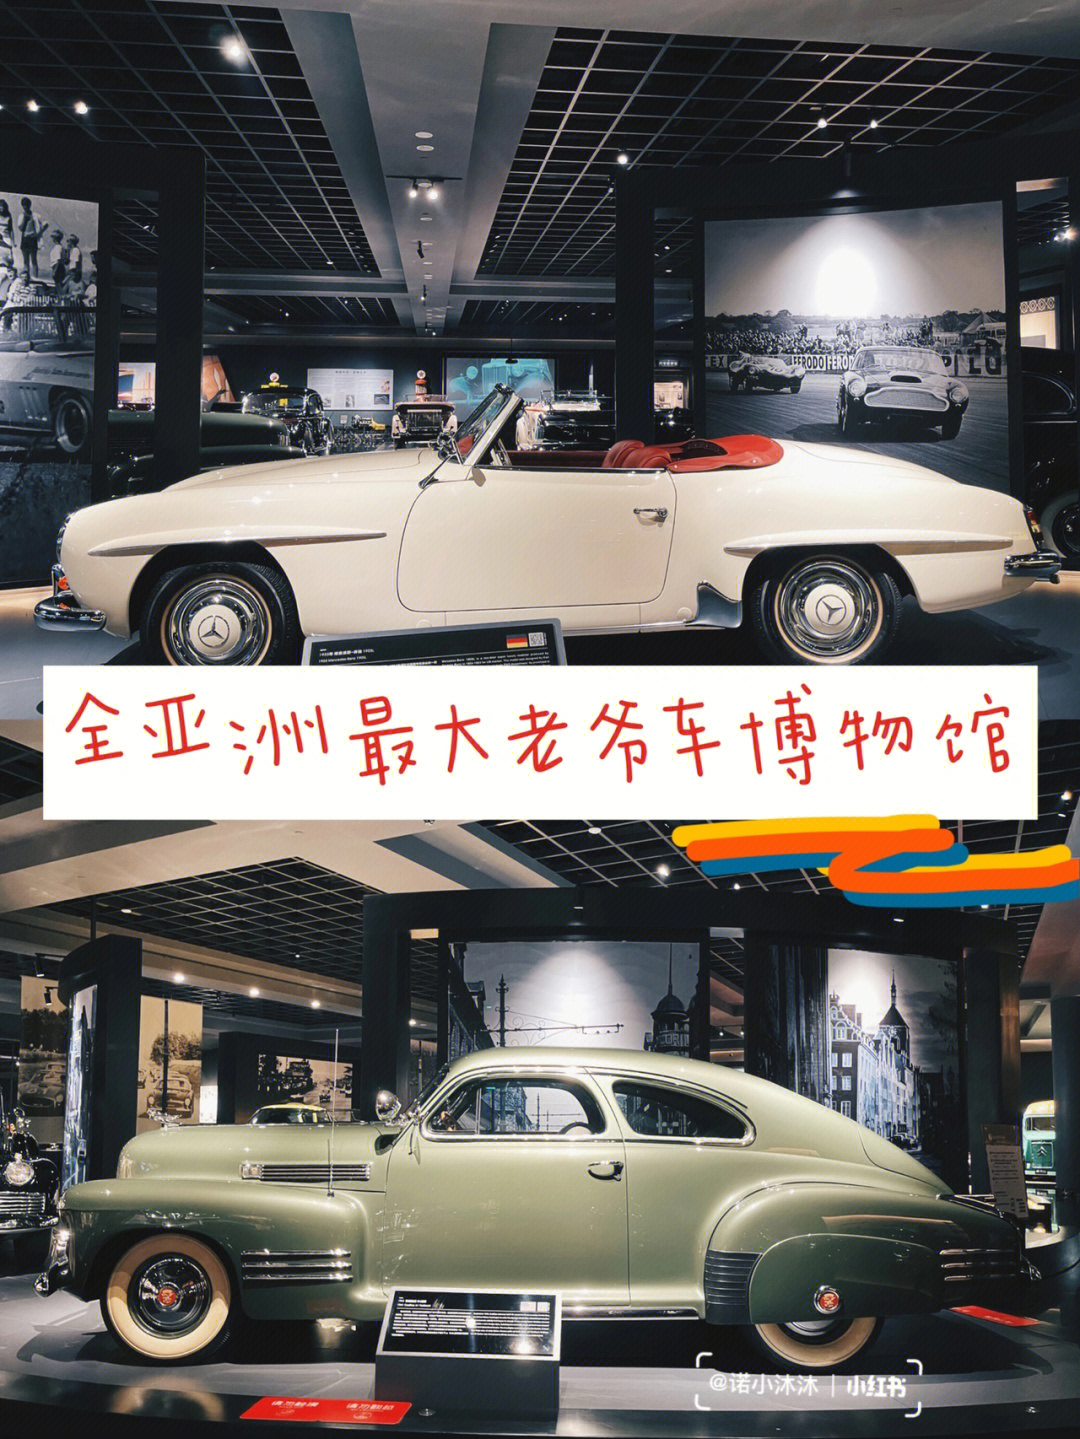 北京老爷车博物馆馆长图片